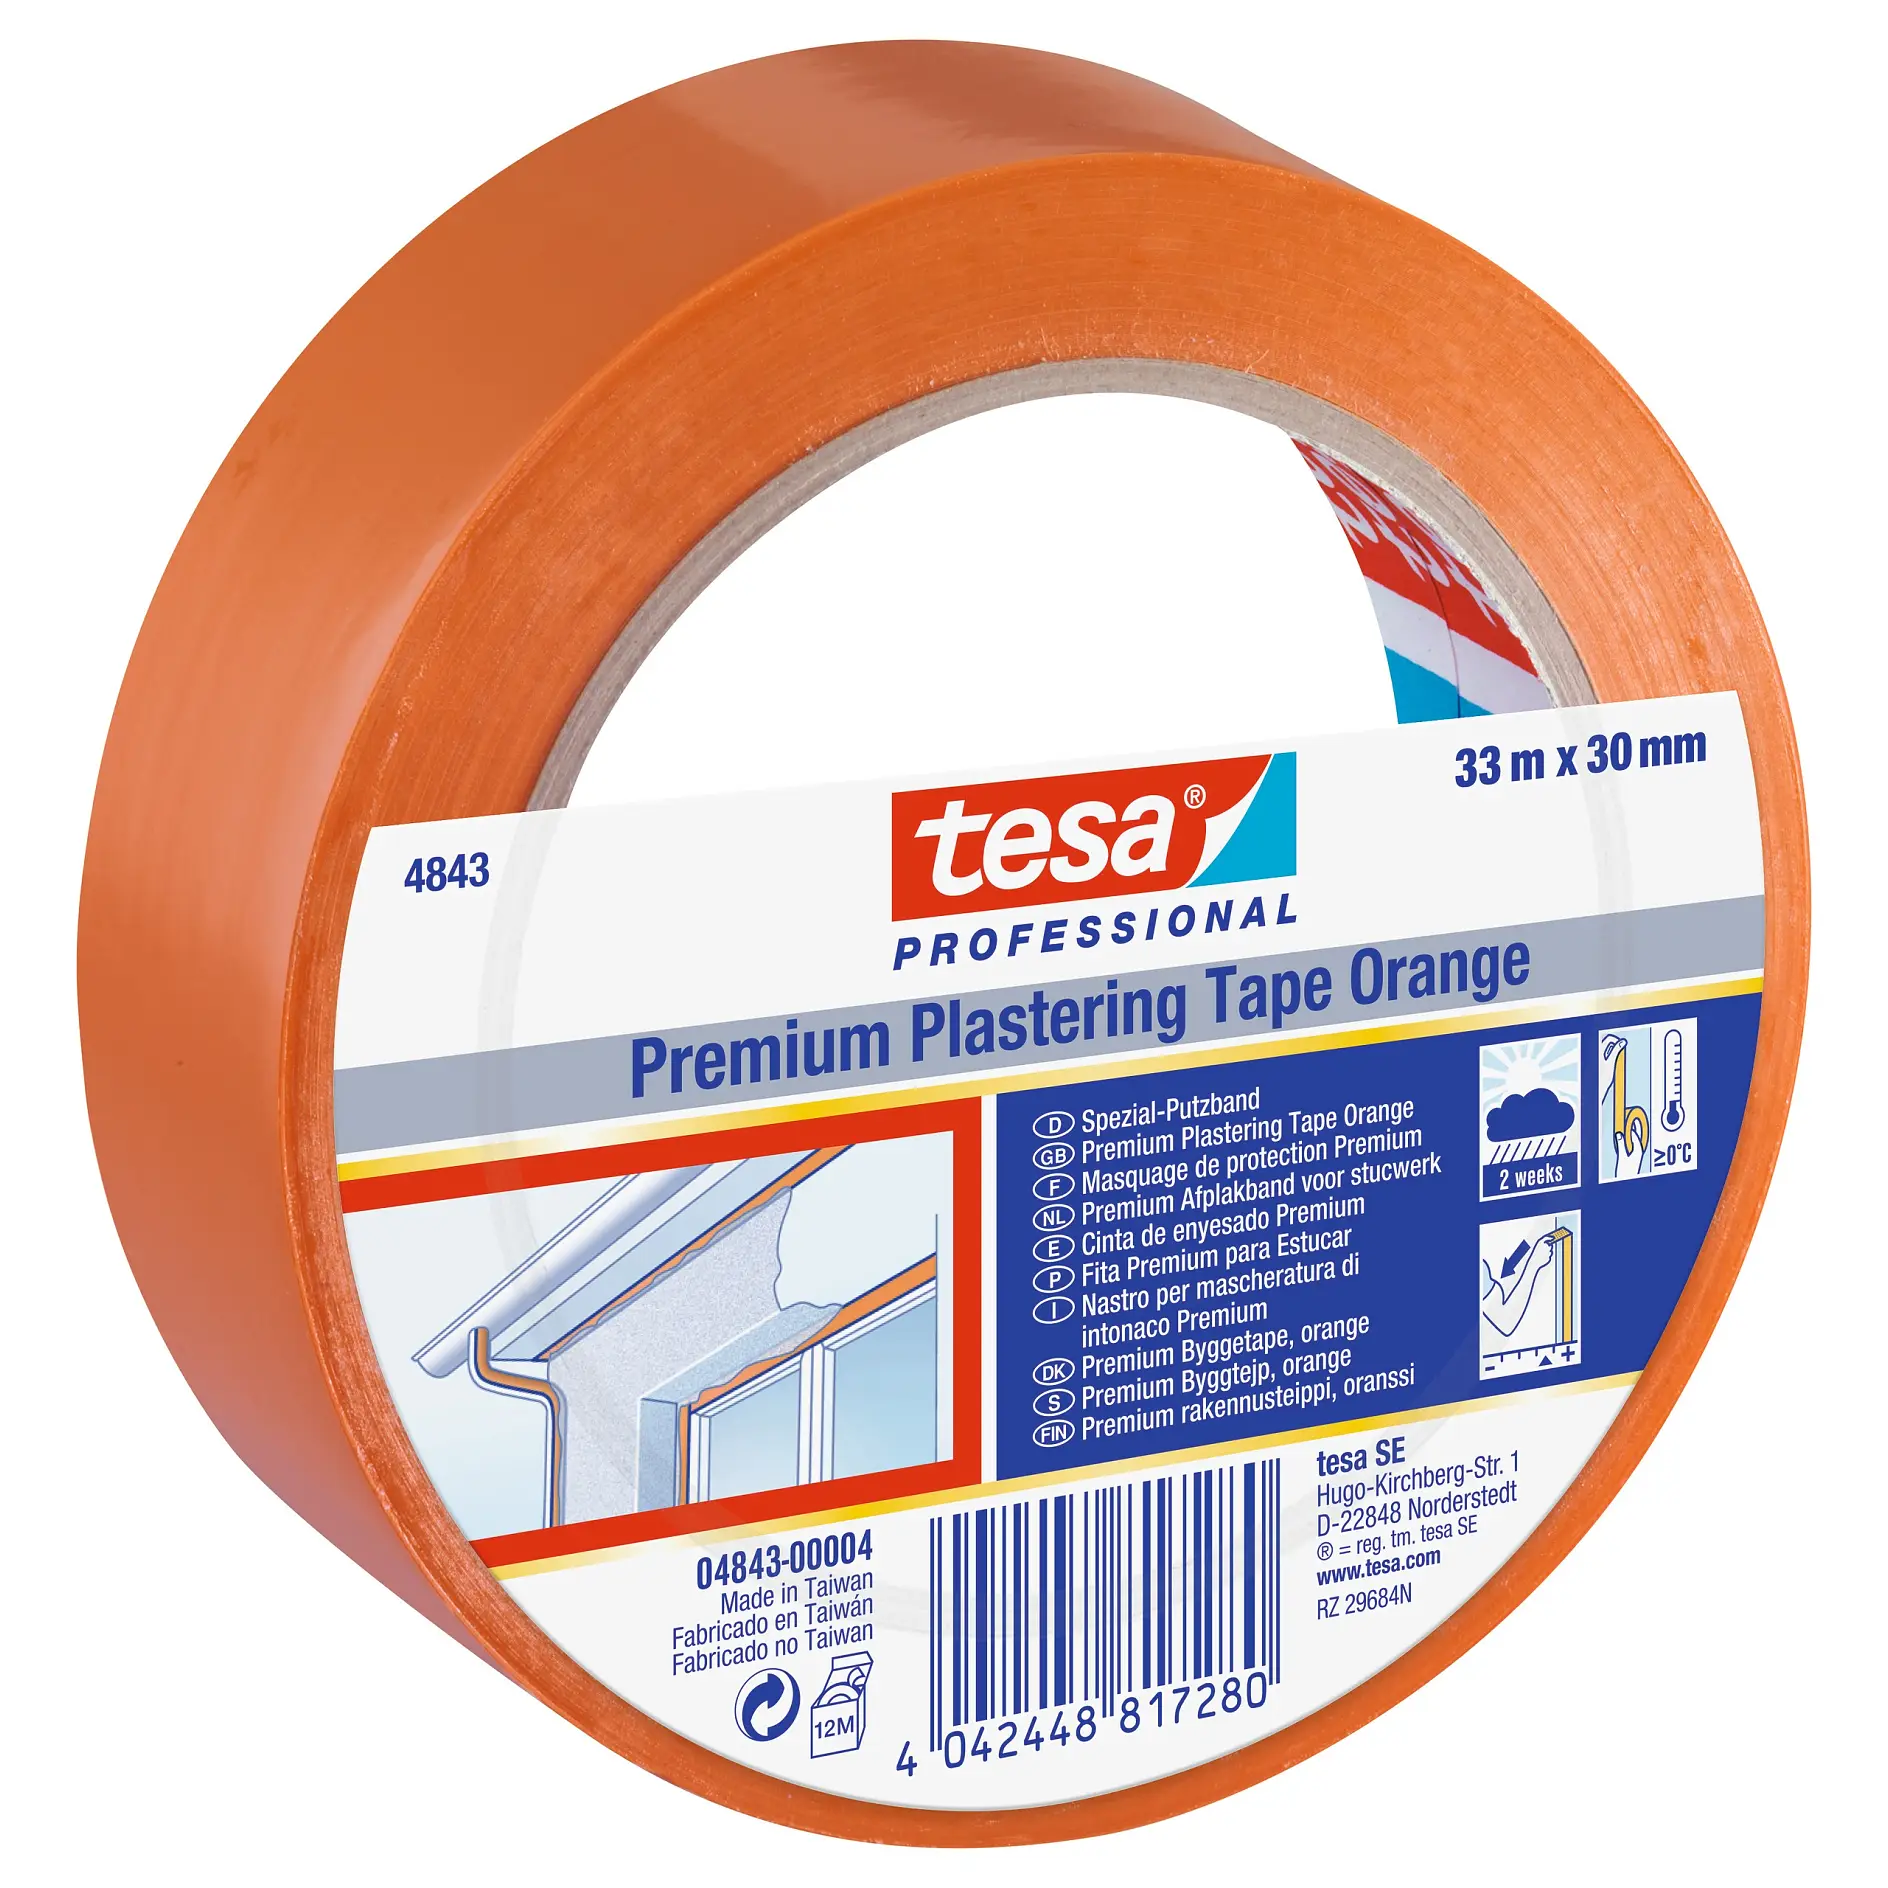 [en-en] tesa professional plastering tape 33mx30mm, Orange, LI401